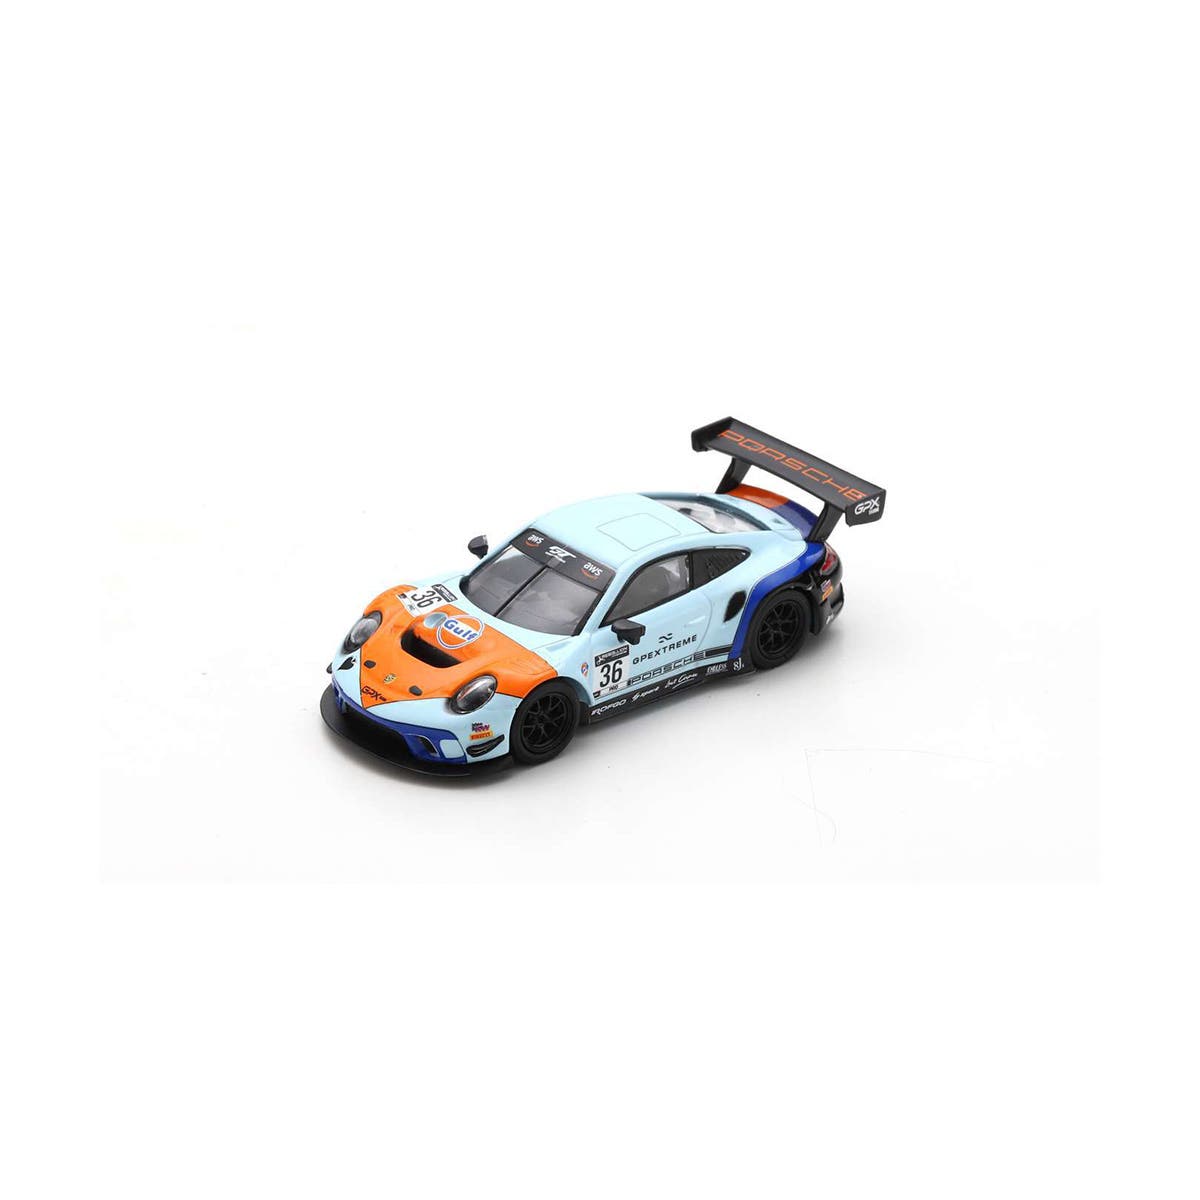 Porsche GT3 R GPX Racing No.36 "The Spade" - 1:64 Scale Resin Model Car